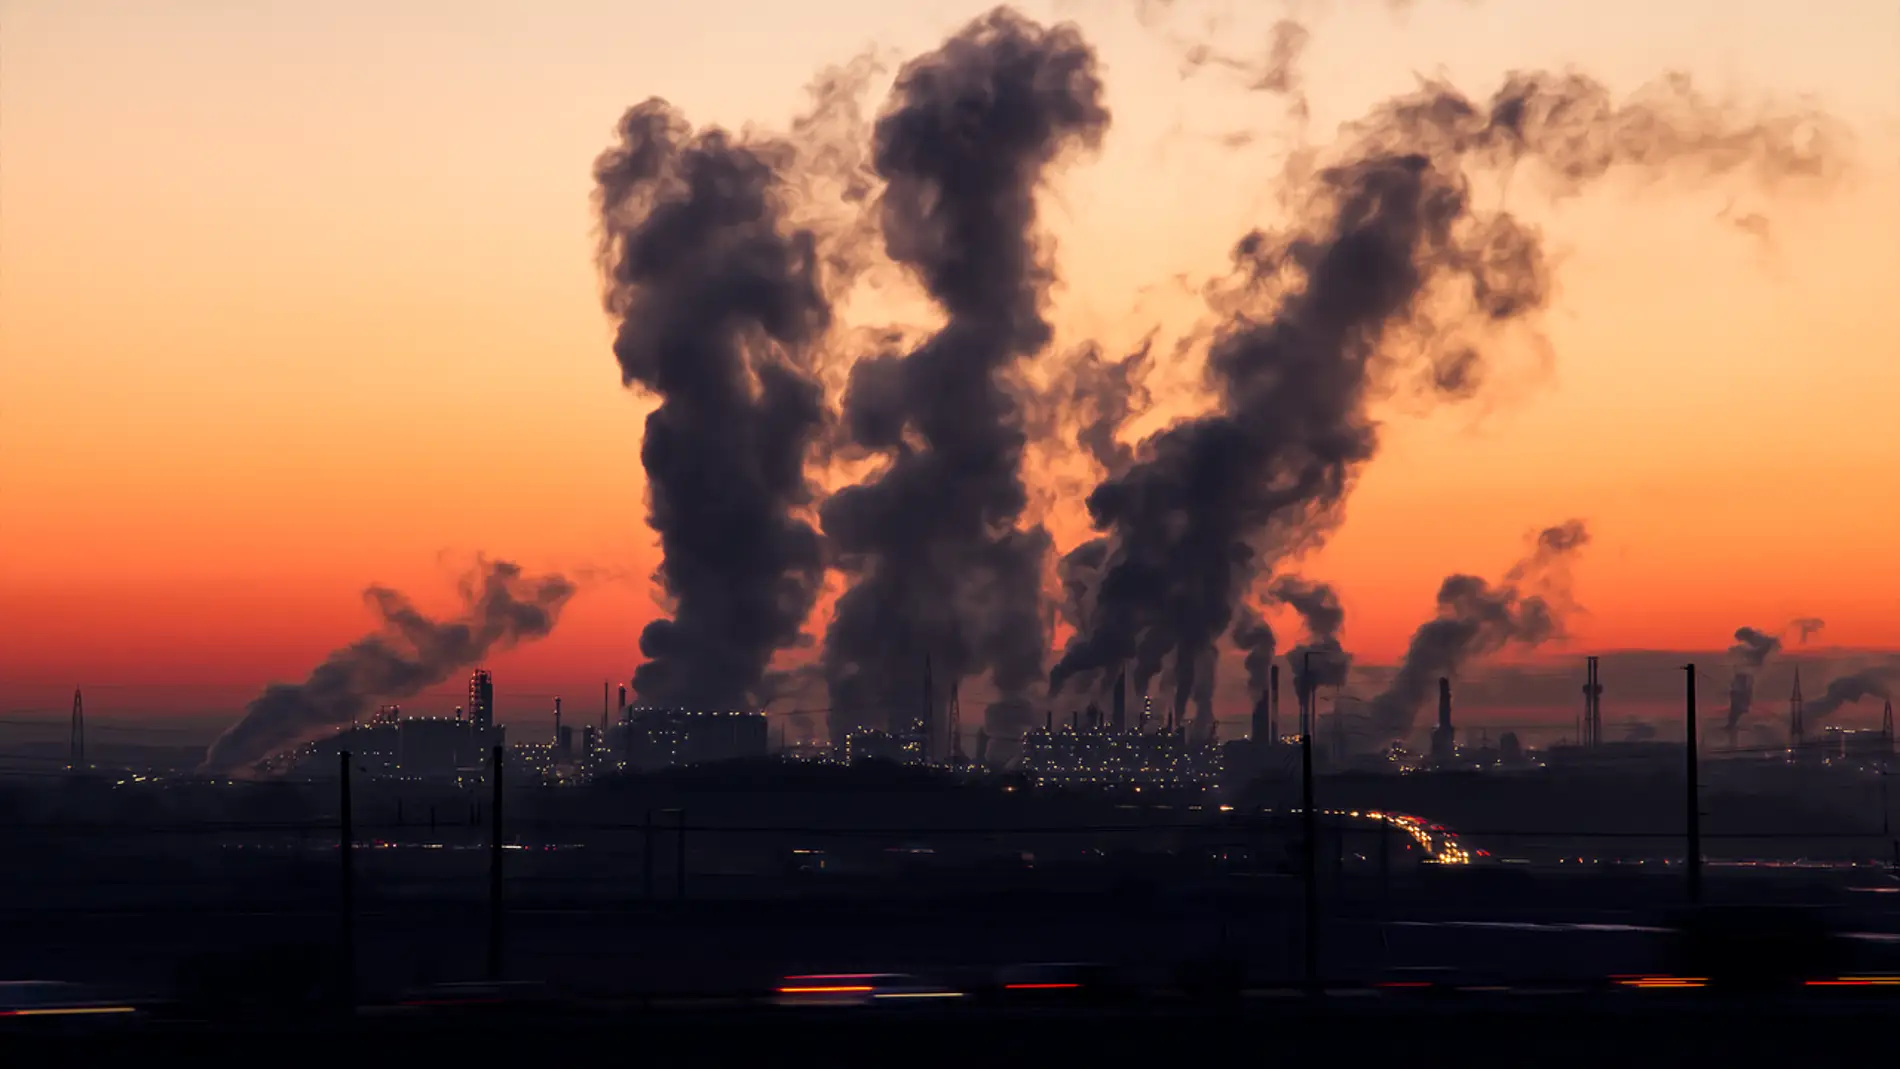 Industria emite gases contaminantes a la atmósfera